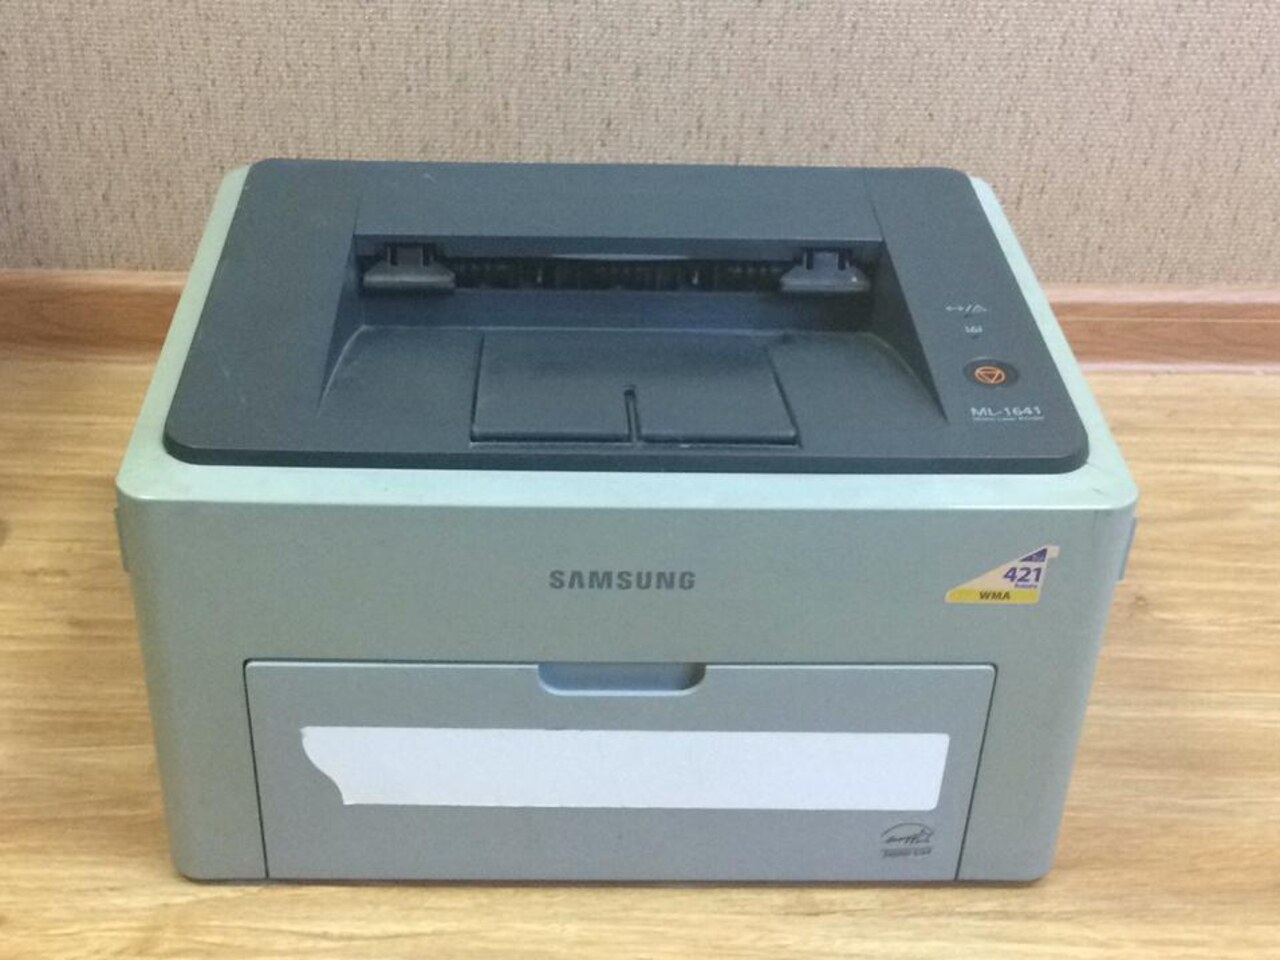 Купить принтер бу на авито. Принтер лазерный самсунг ml1641. Принтер самсунг ml 1641. Samsung 1641 принтер. Samsung лазерный ml 1641.